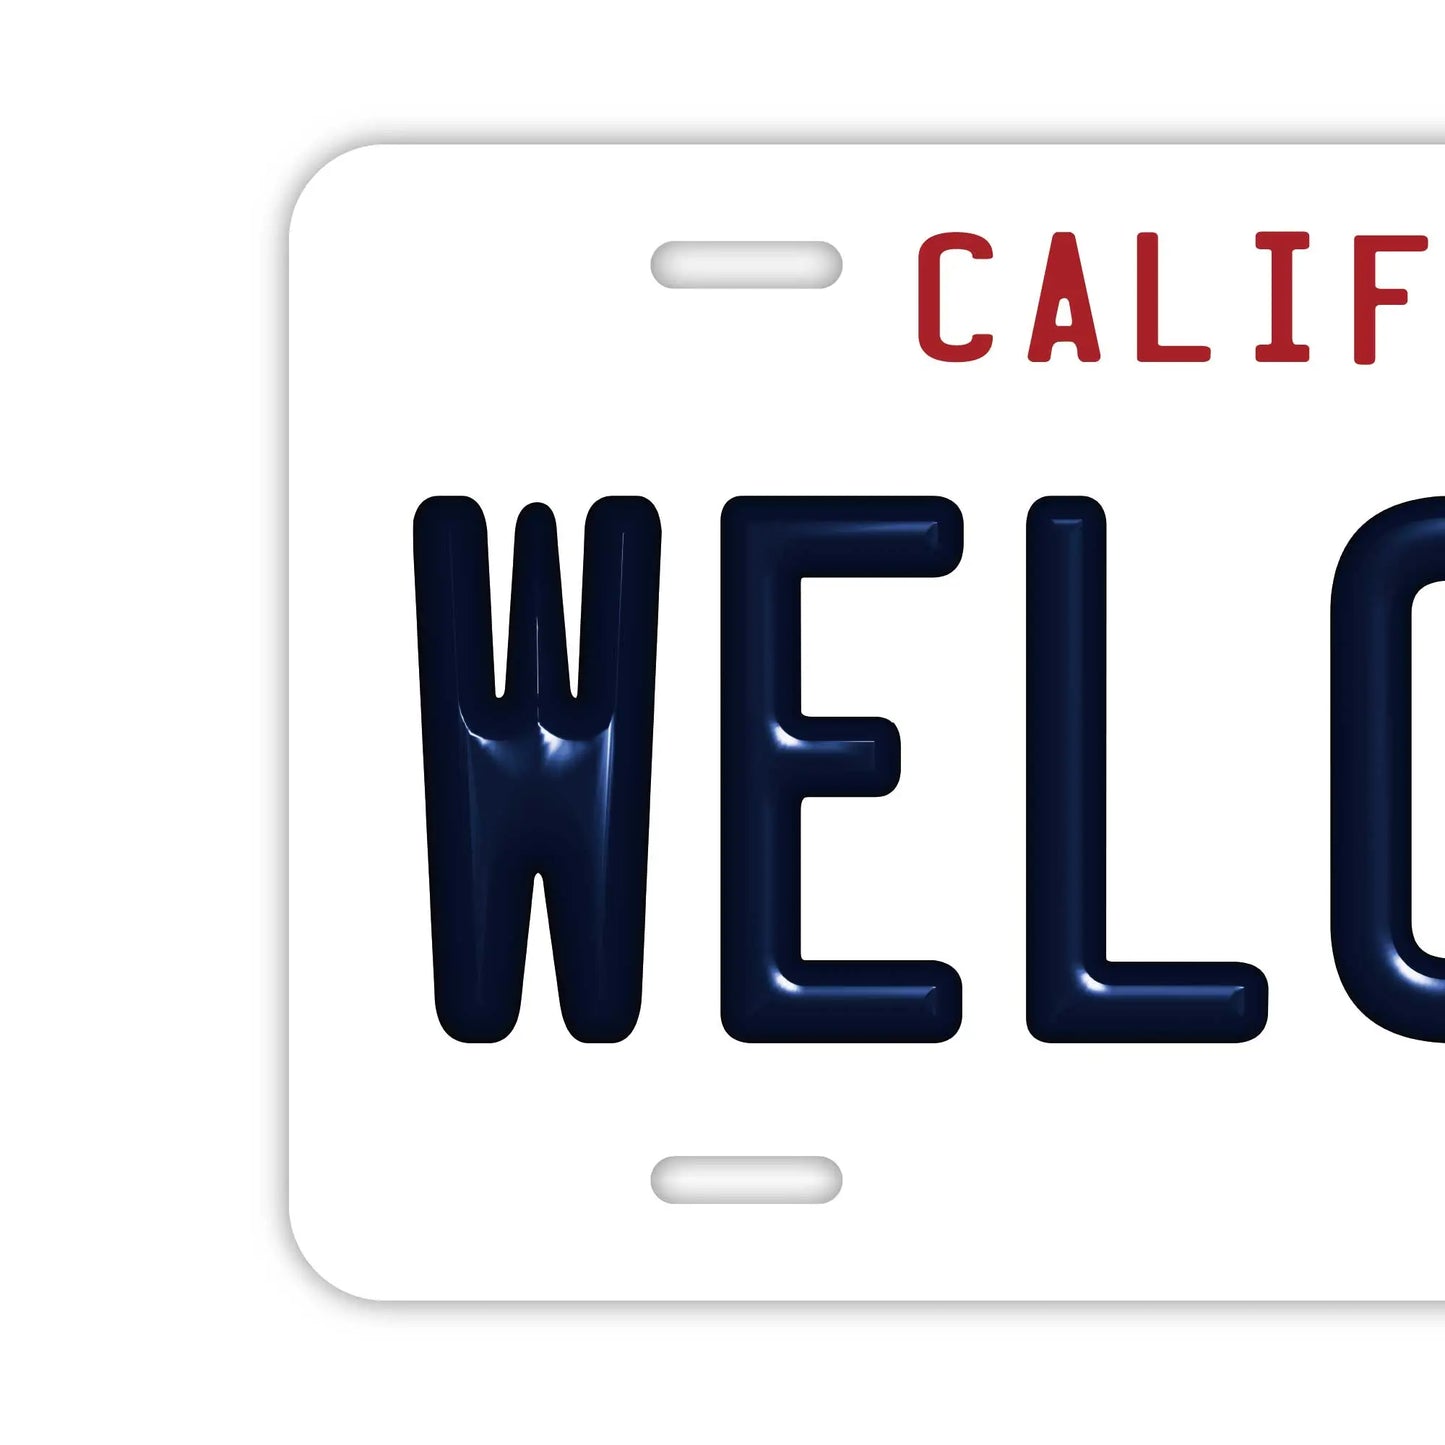 【ウェルカムボード看板】カリフォルニア州1990年代・アメリカライセンスプレート型サイン PL8HERO